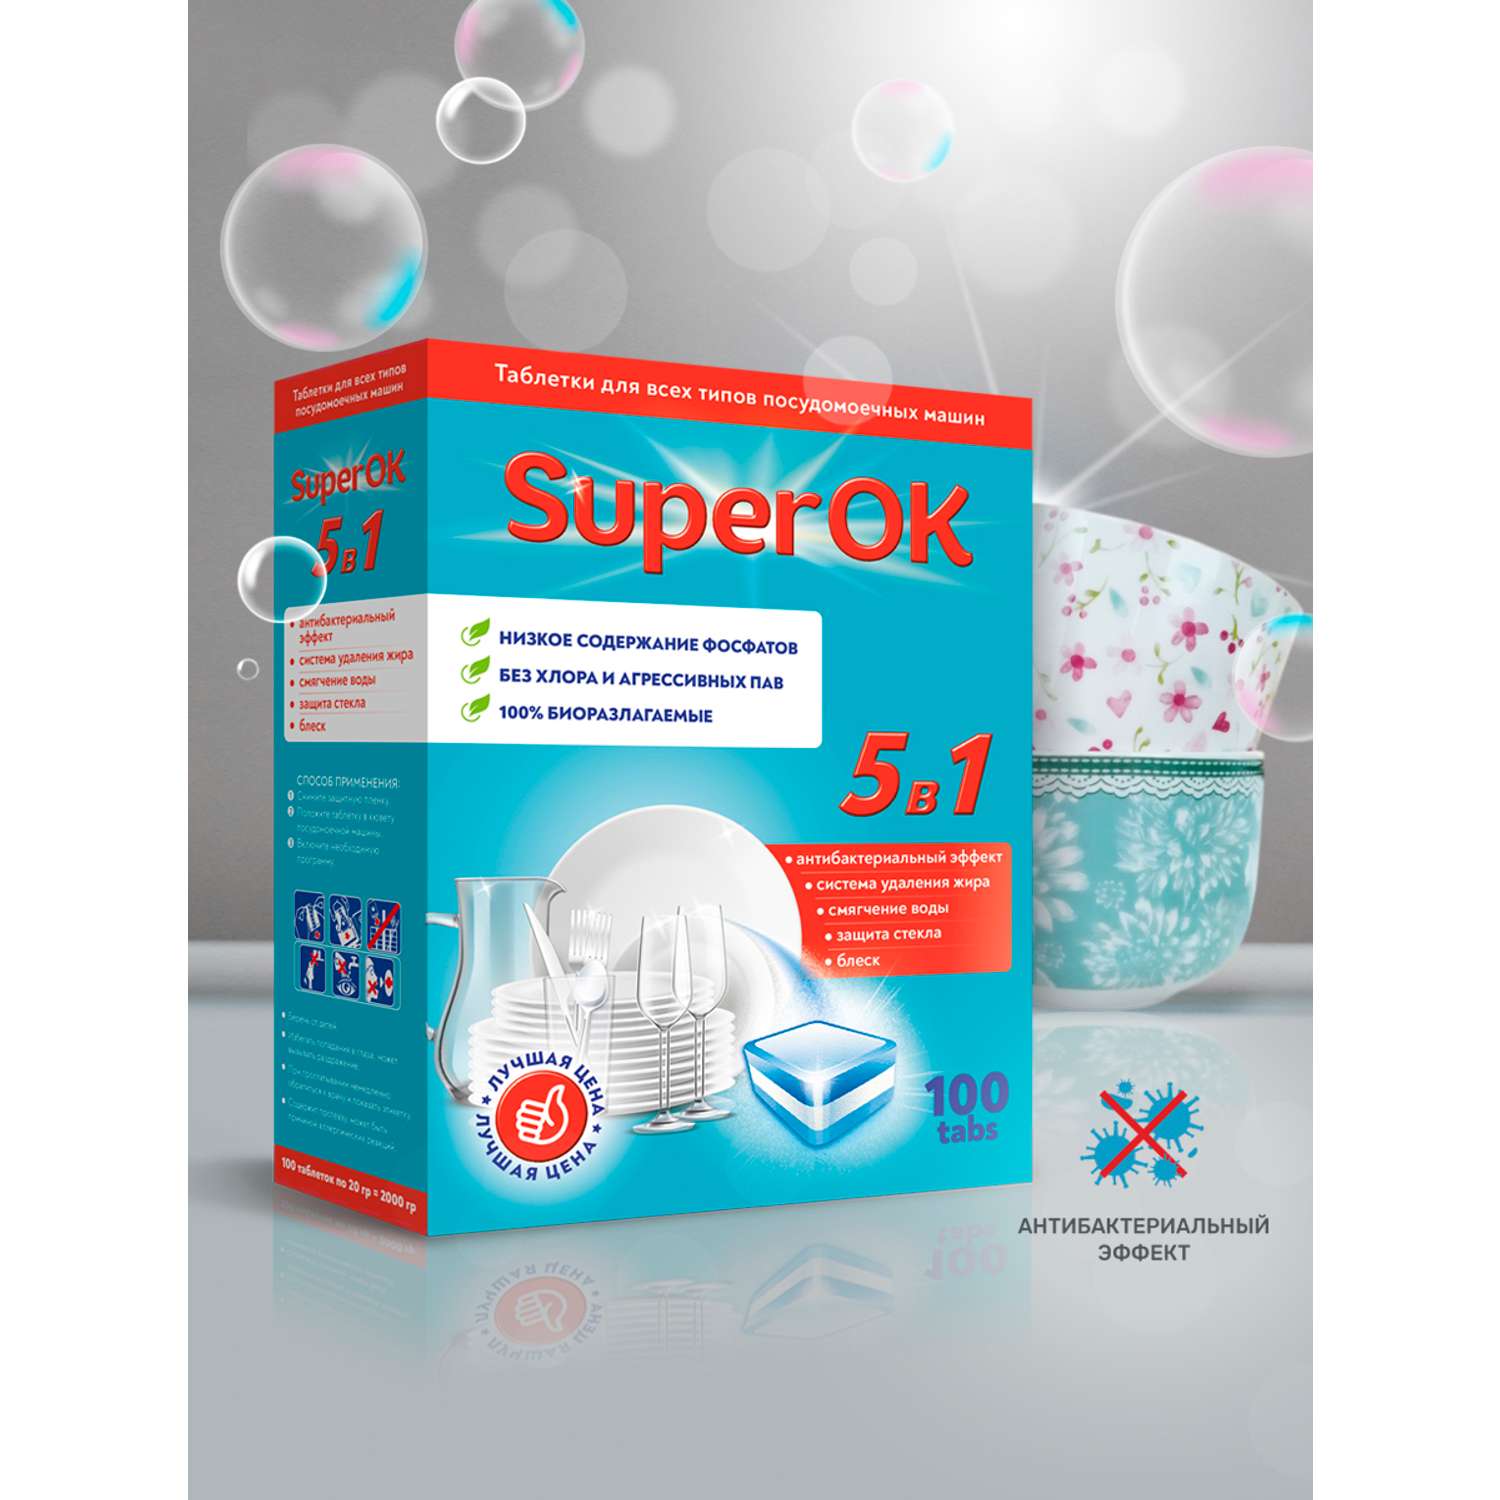 Таблетки SuperOK для посудомоечных машин 100 шт - фото 3